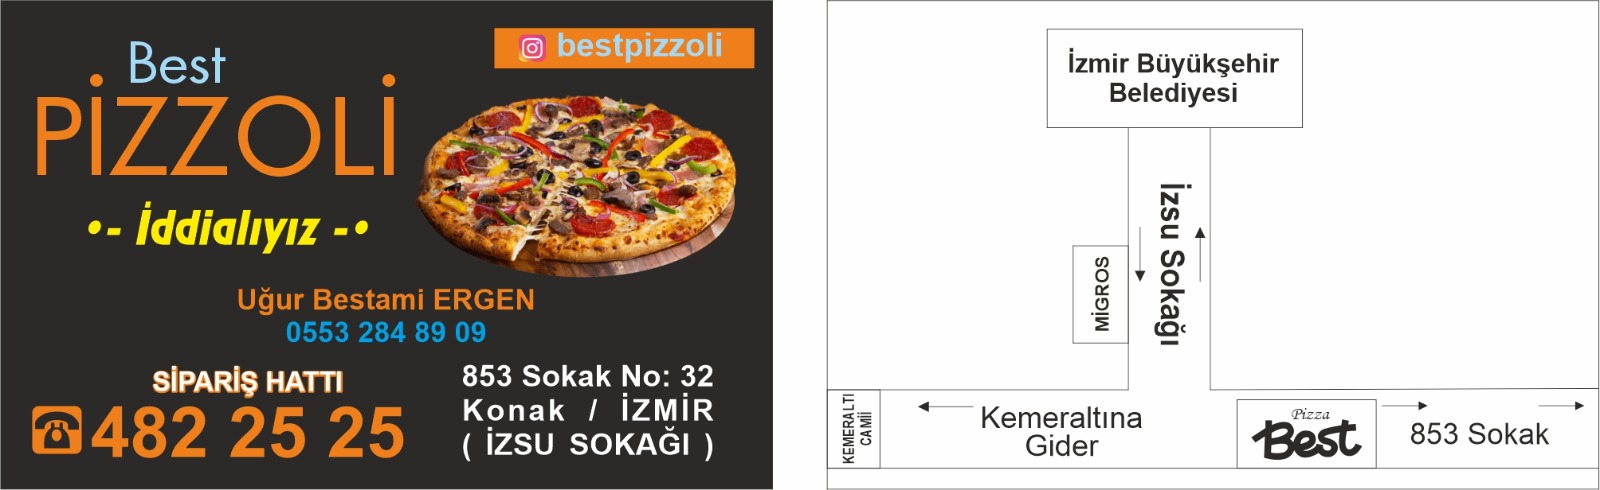 izmir pizza pideci kartvizit broşür ıslak mendil yağlı kağıt kese kağıt yaptır fiyat tasarım baskı